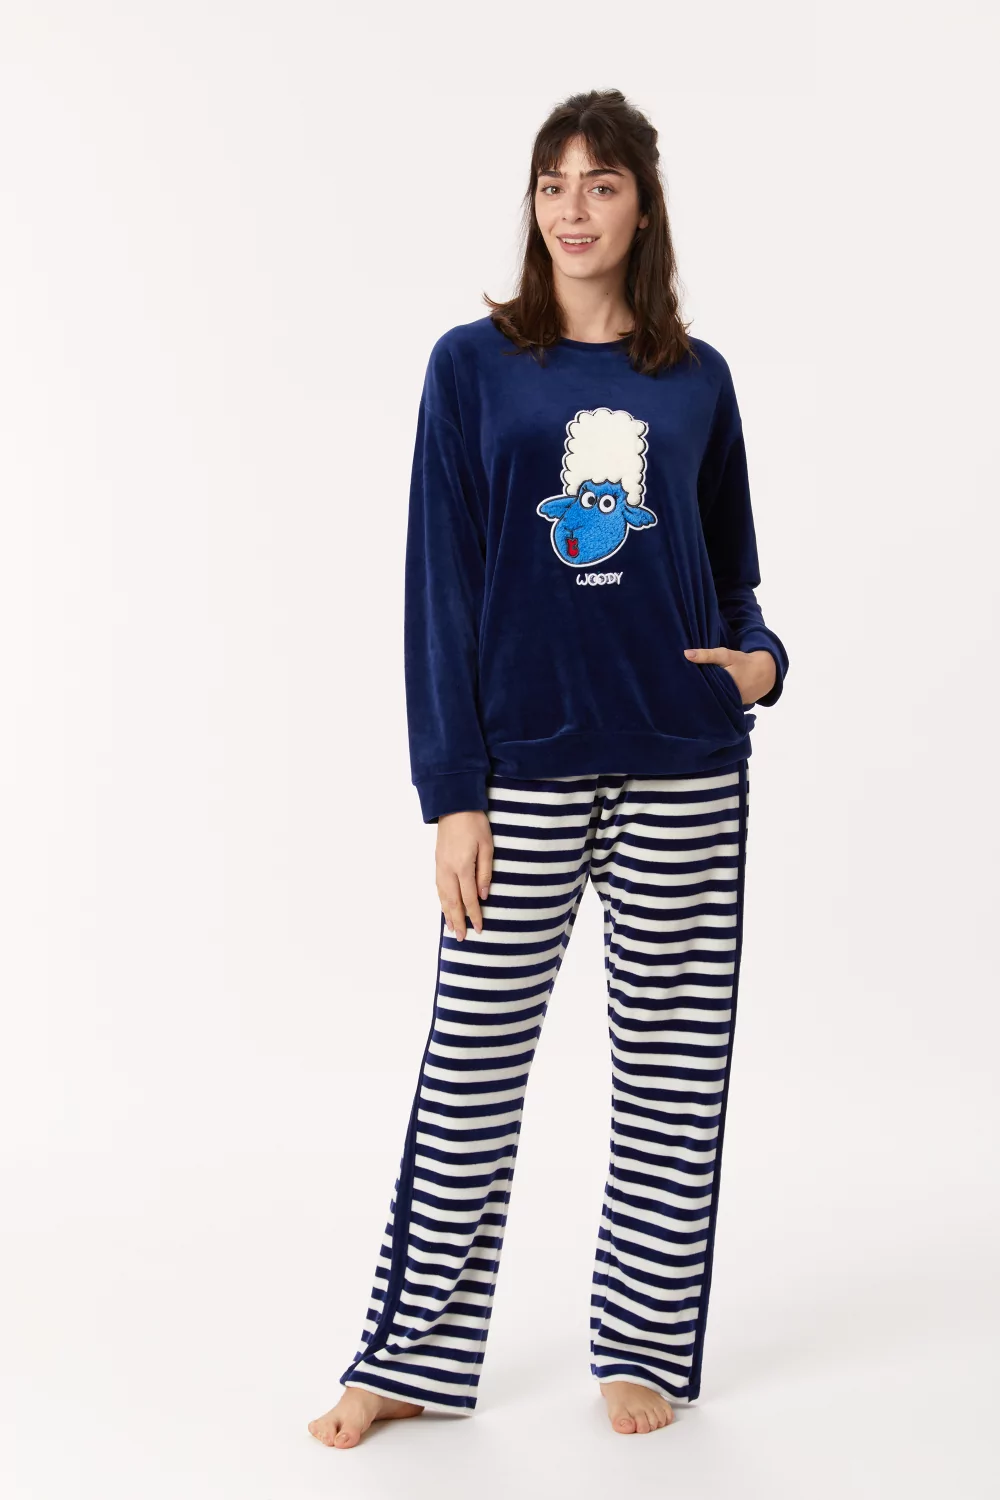 Fragiel Tijdig Schijn Woody Schaap Dames Pyjama - beacon blue | Elegance Lingerie